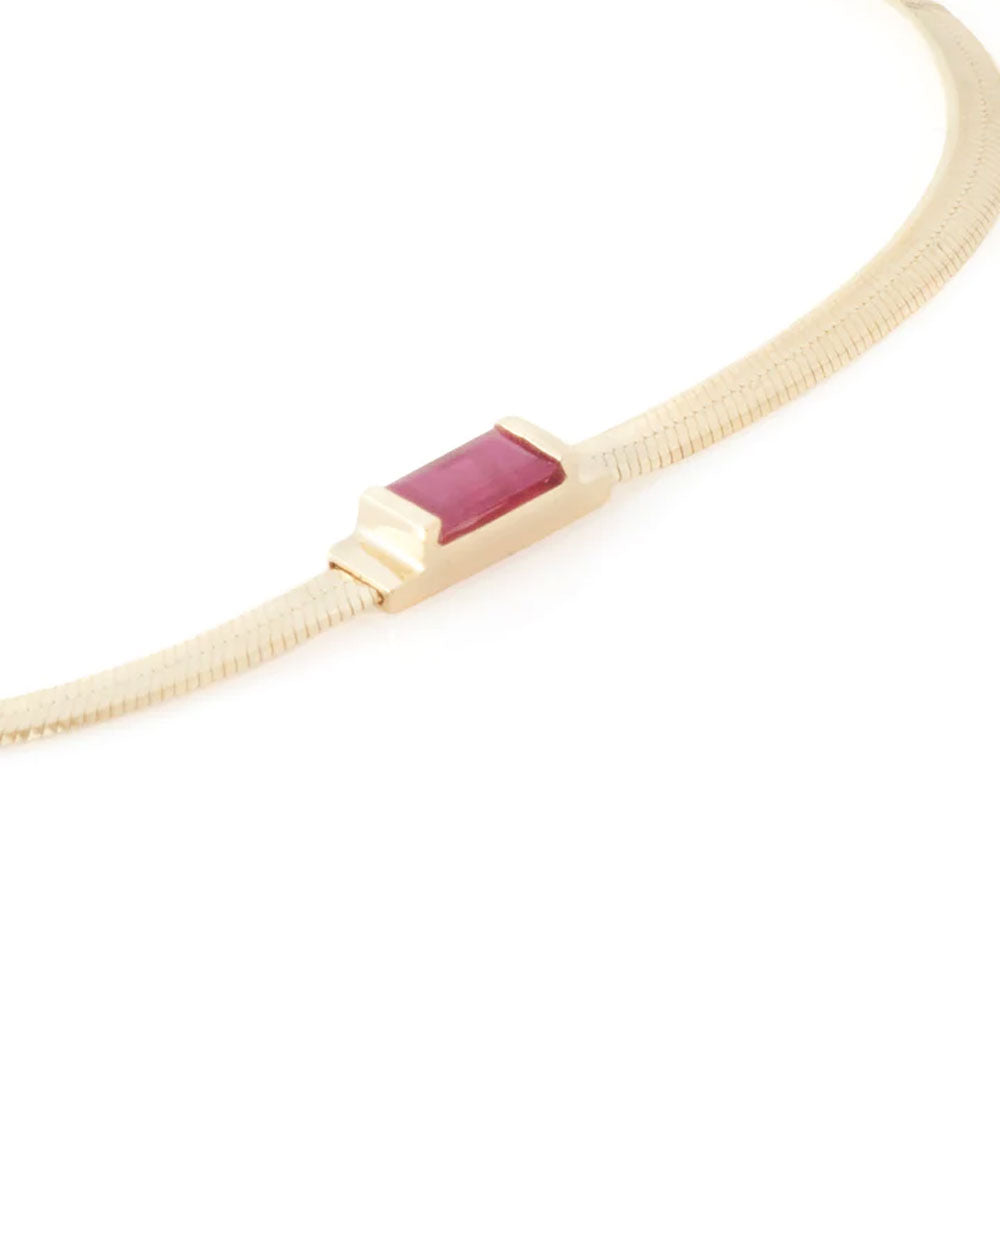 Ruby Herringbone Bracelet